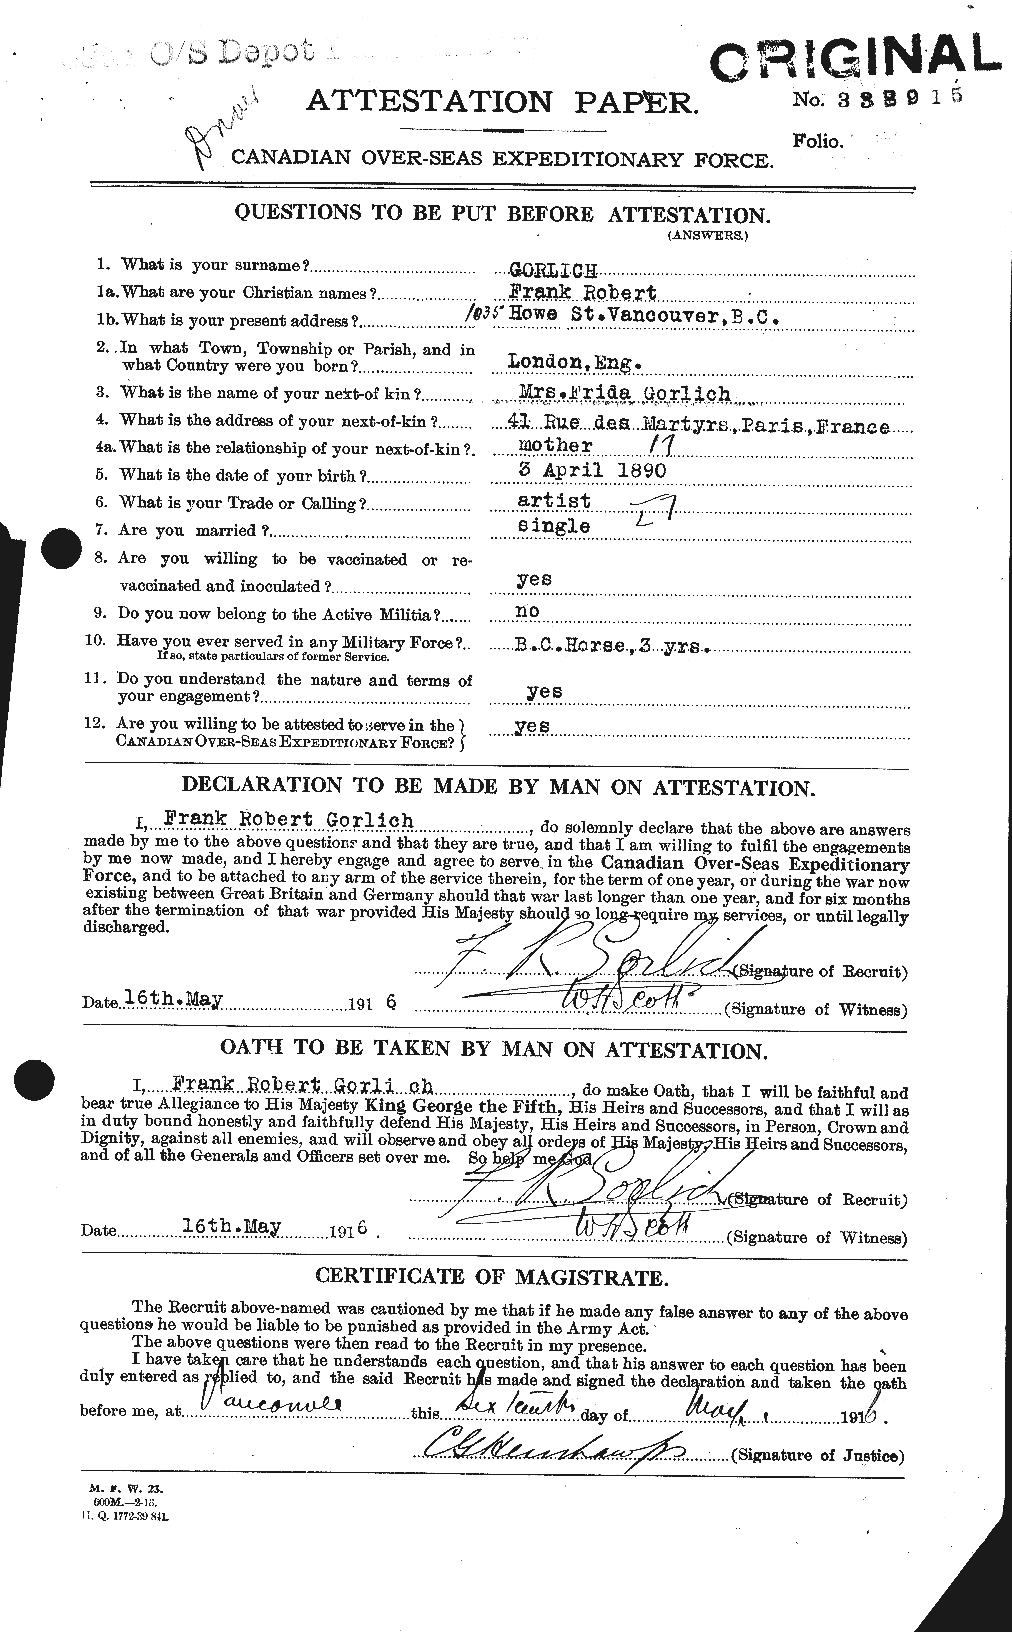 Dossiers du Personnel de la Première Guerre mondiale - CEC 356764a